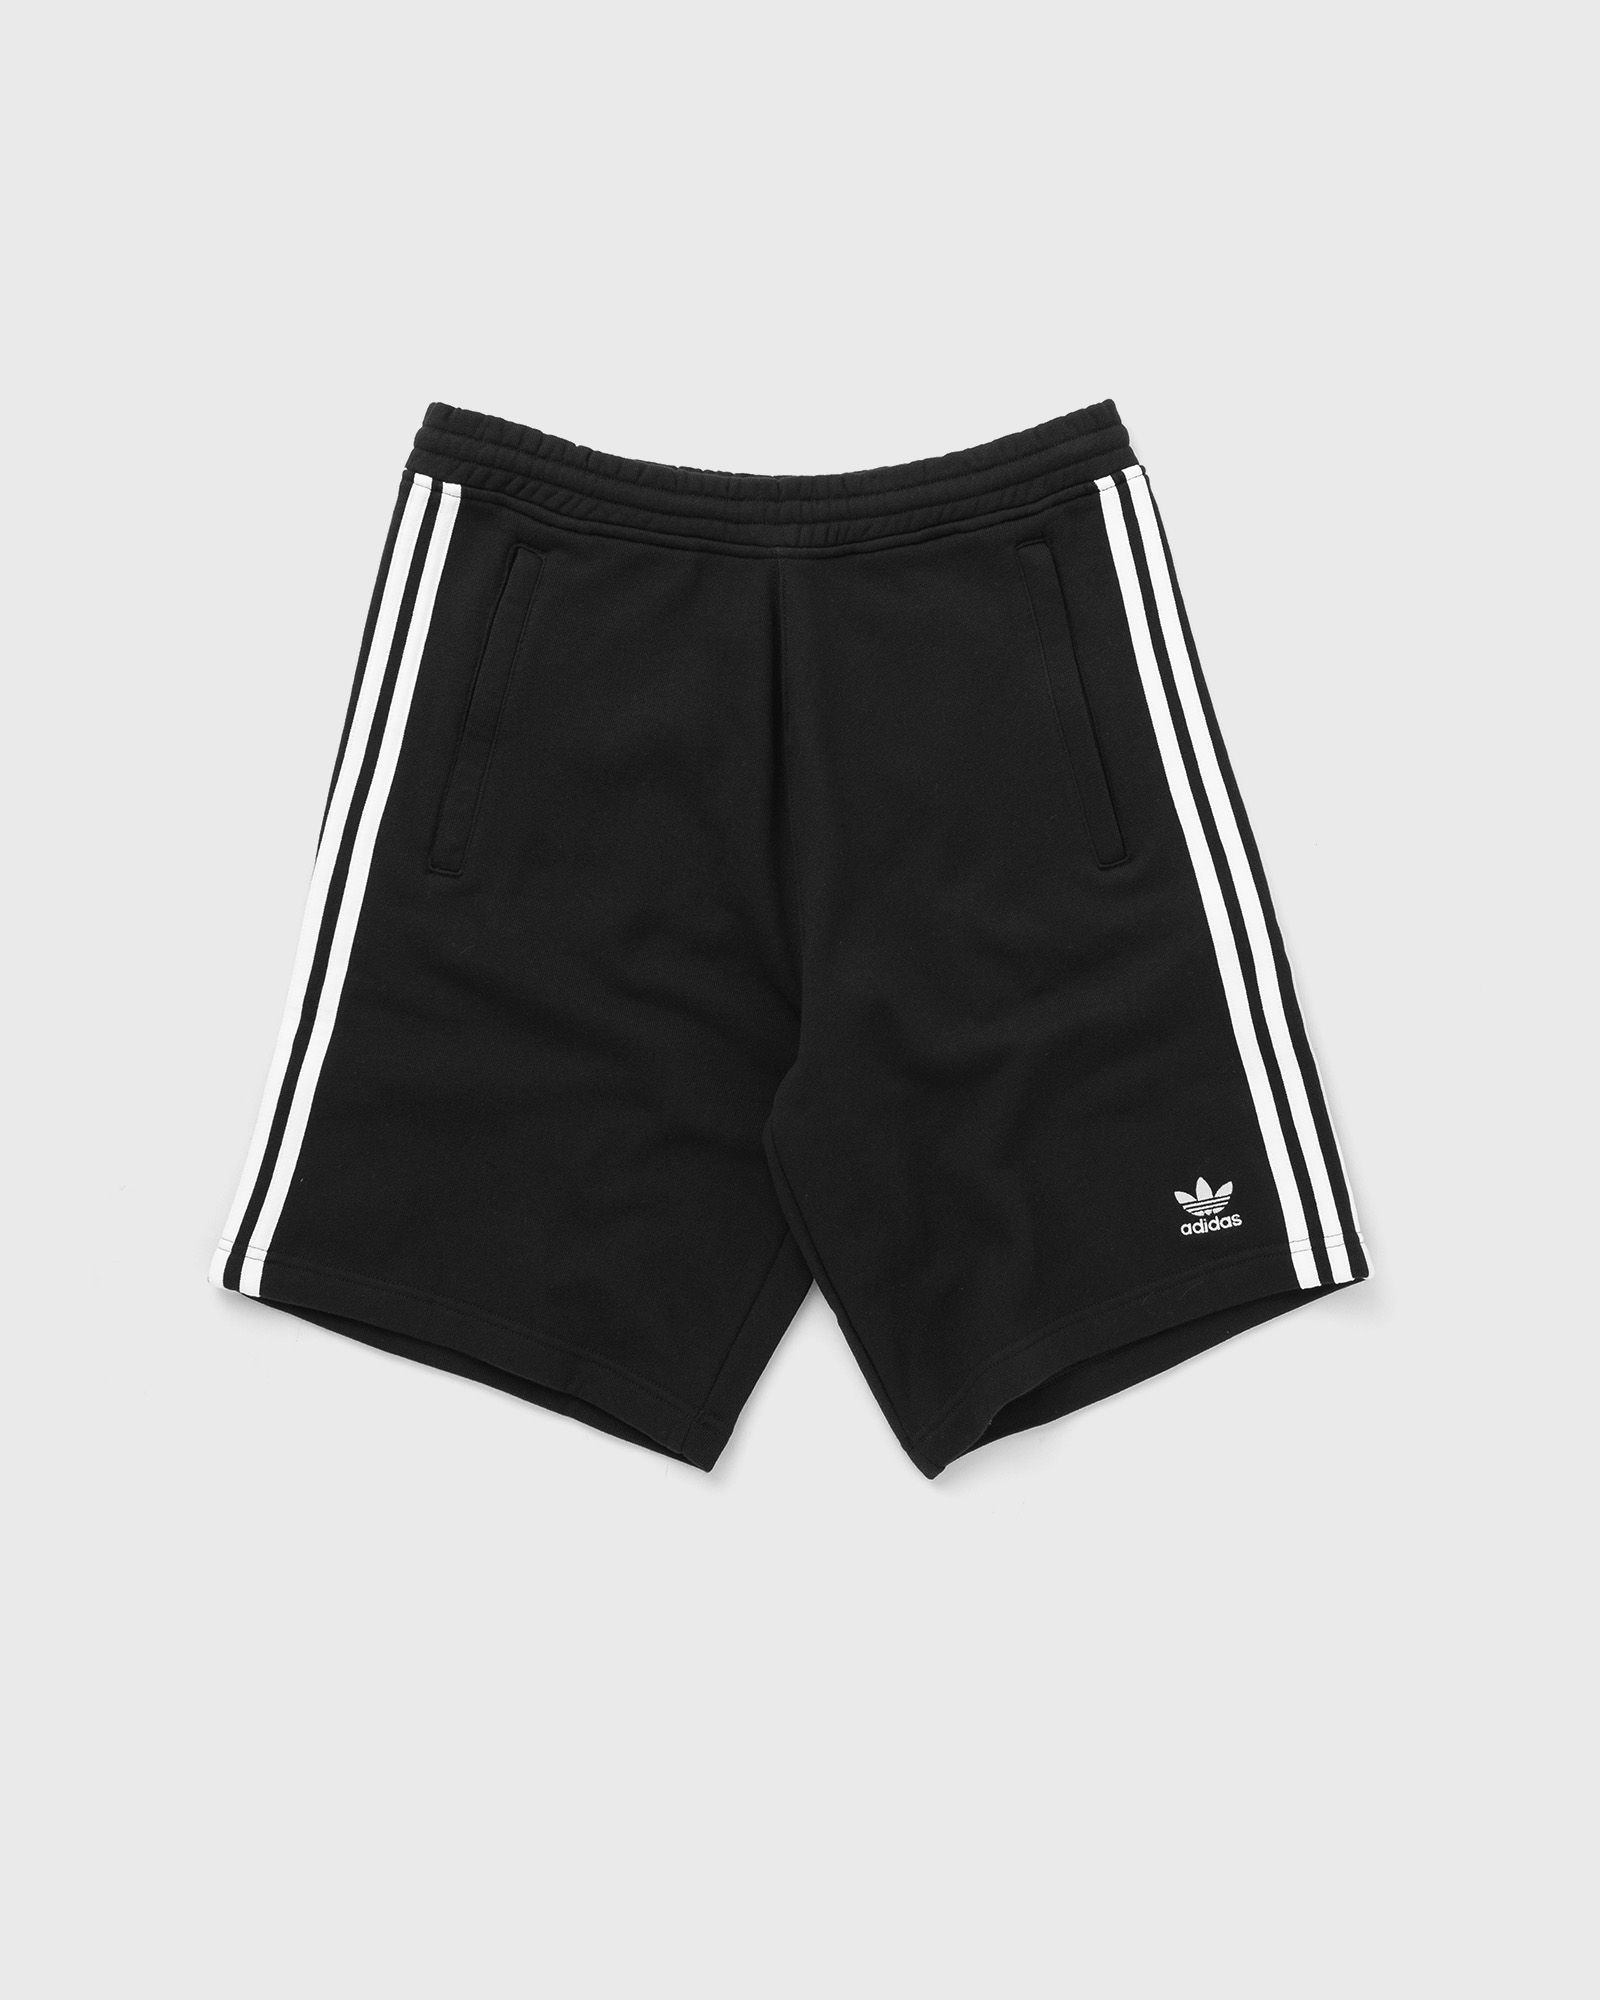 Adidas - 3-stripe short men sport & team shorts black in größe:xxl